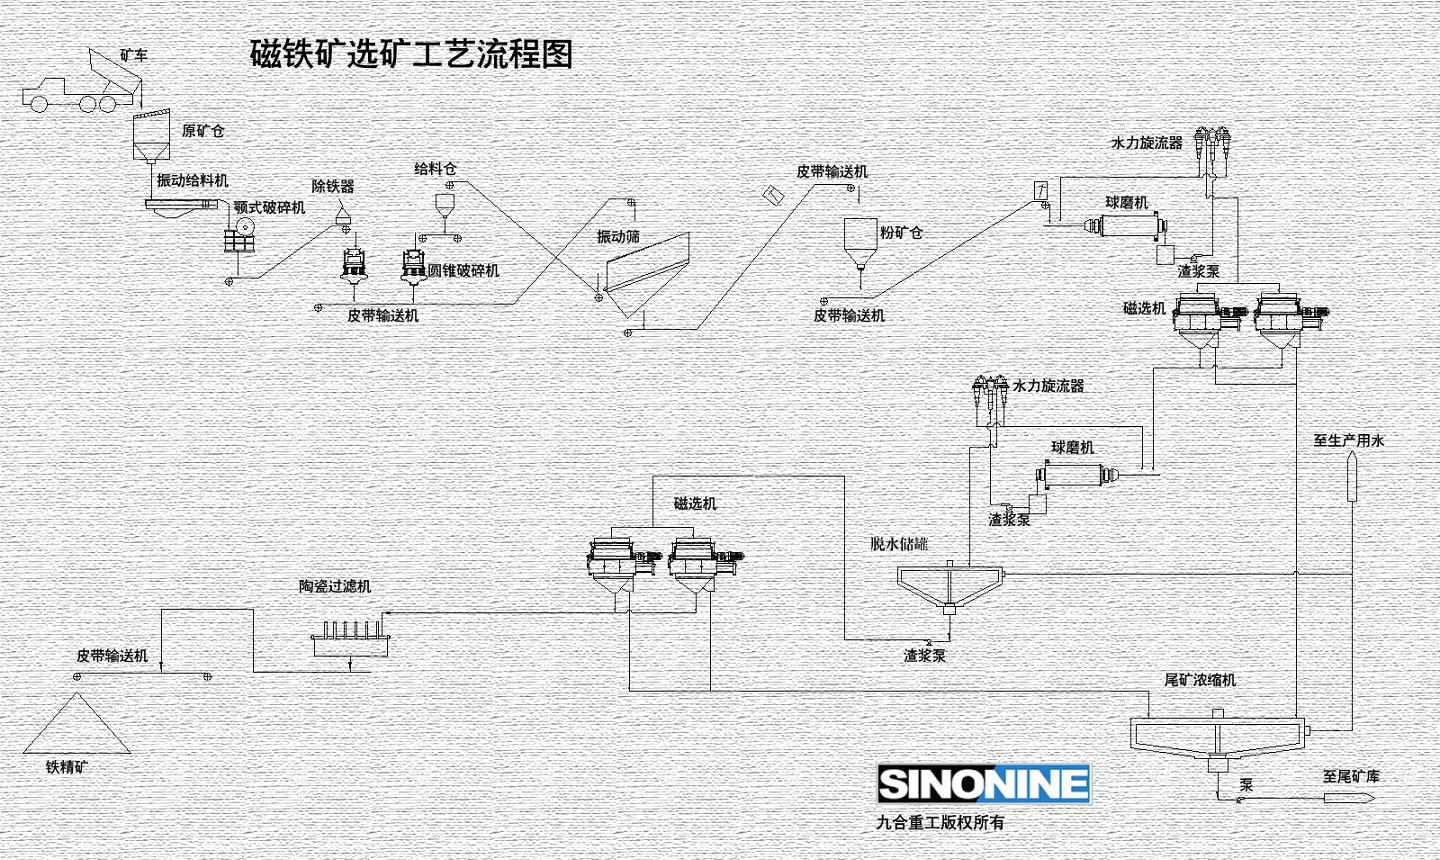 磁铁矿选矿生产线工艺流程图CN.jpg